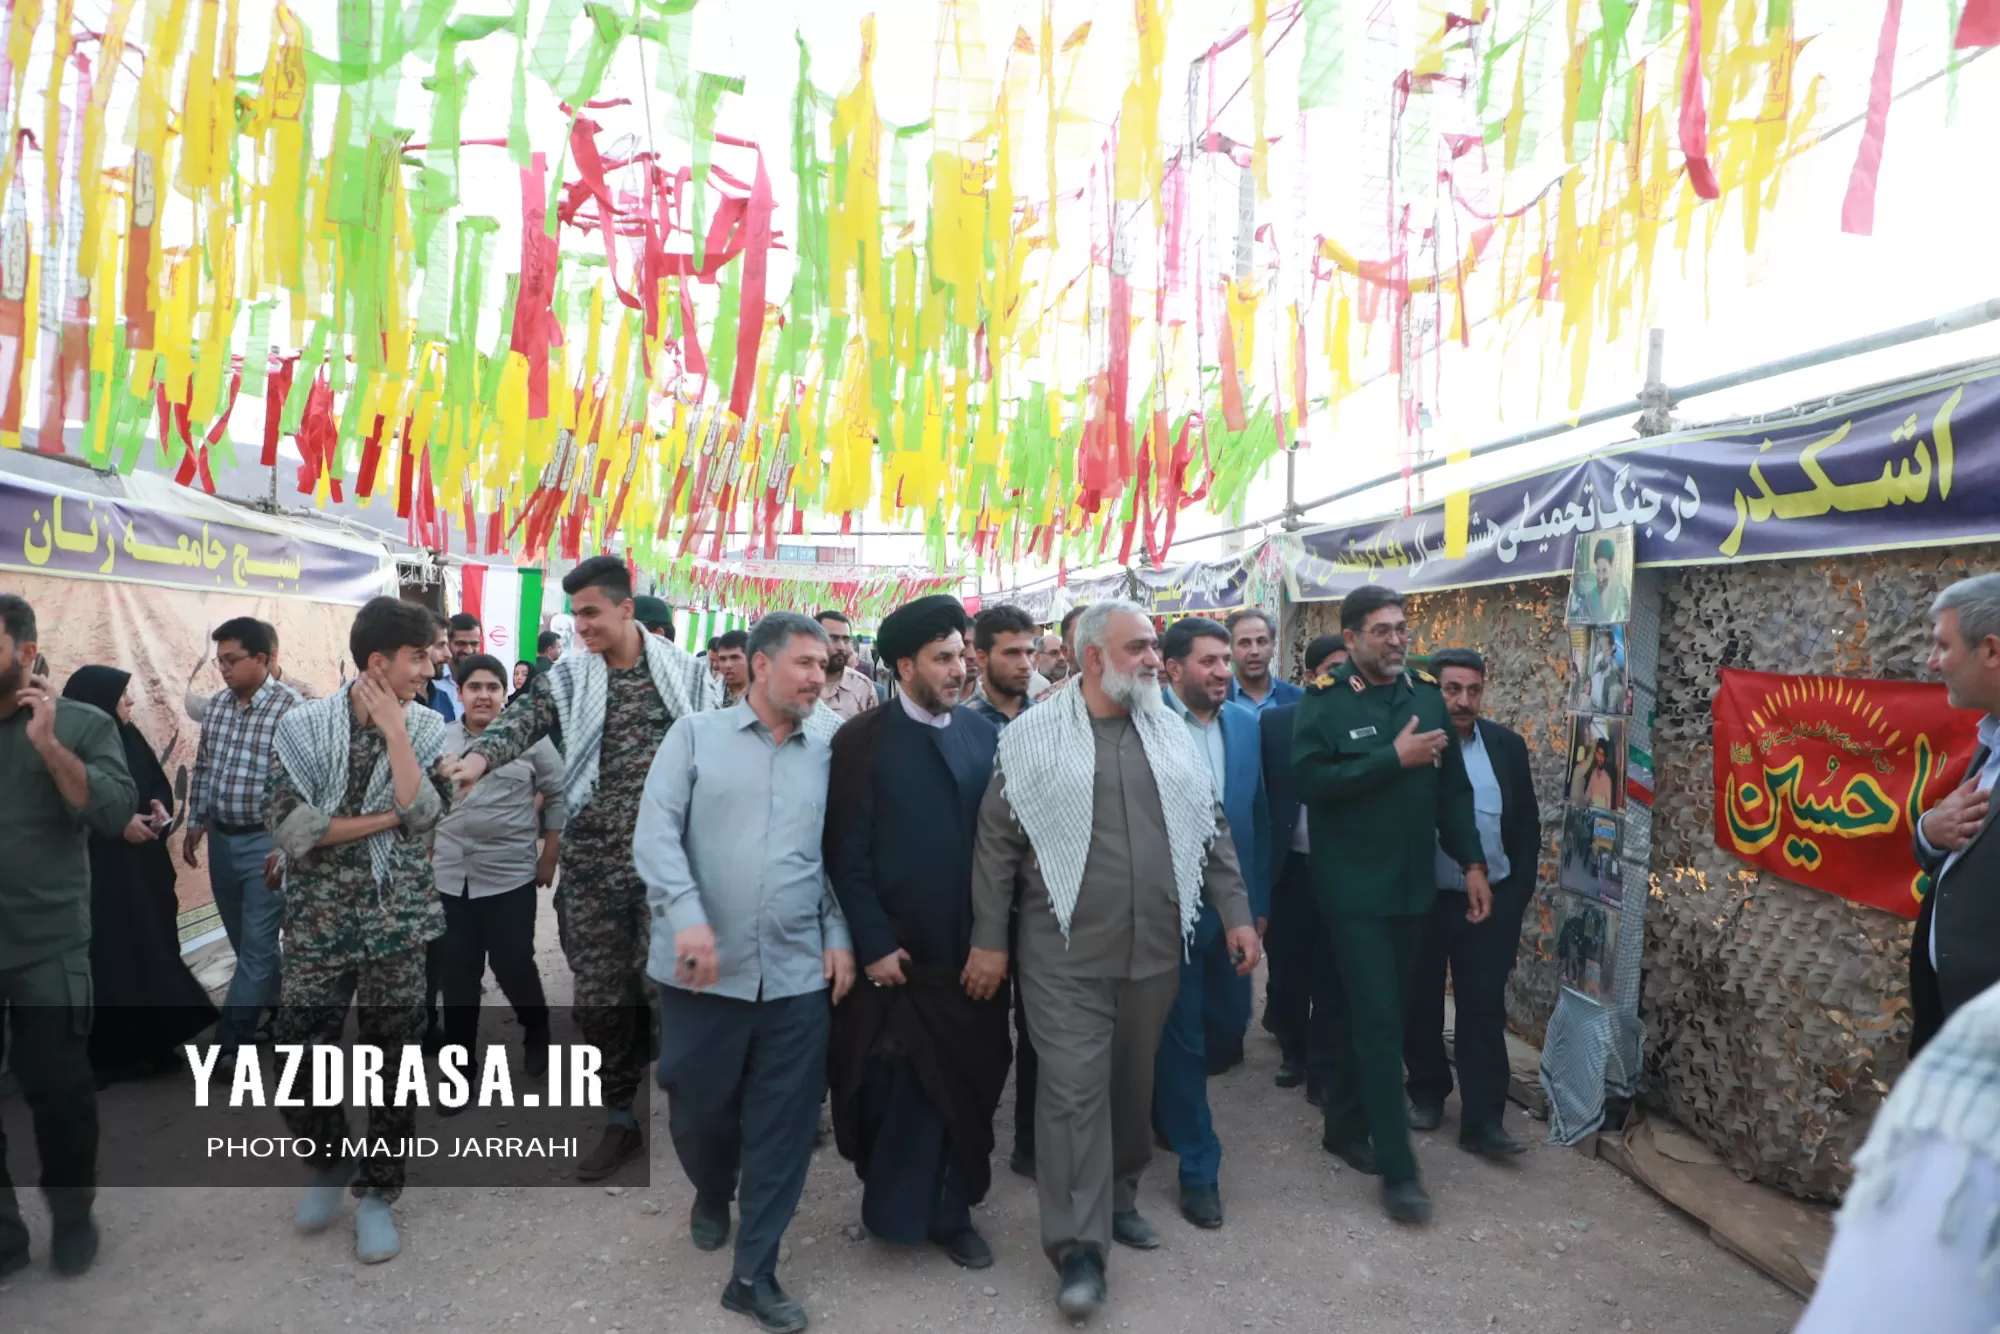 افتتاح نمایشگاه دستاوردهای دفاع مقدس در یزد